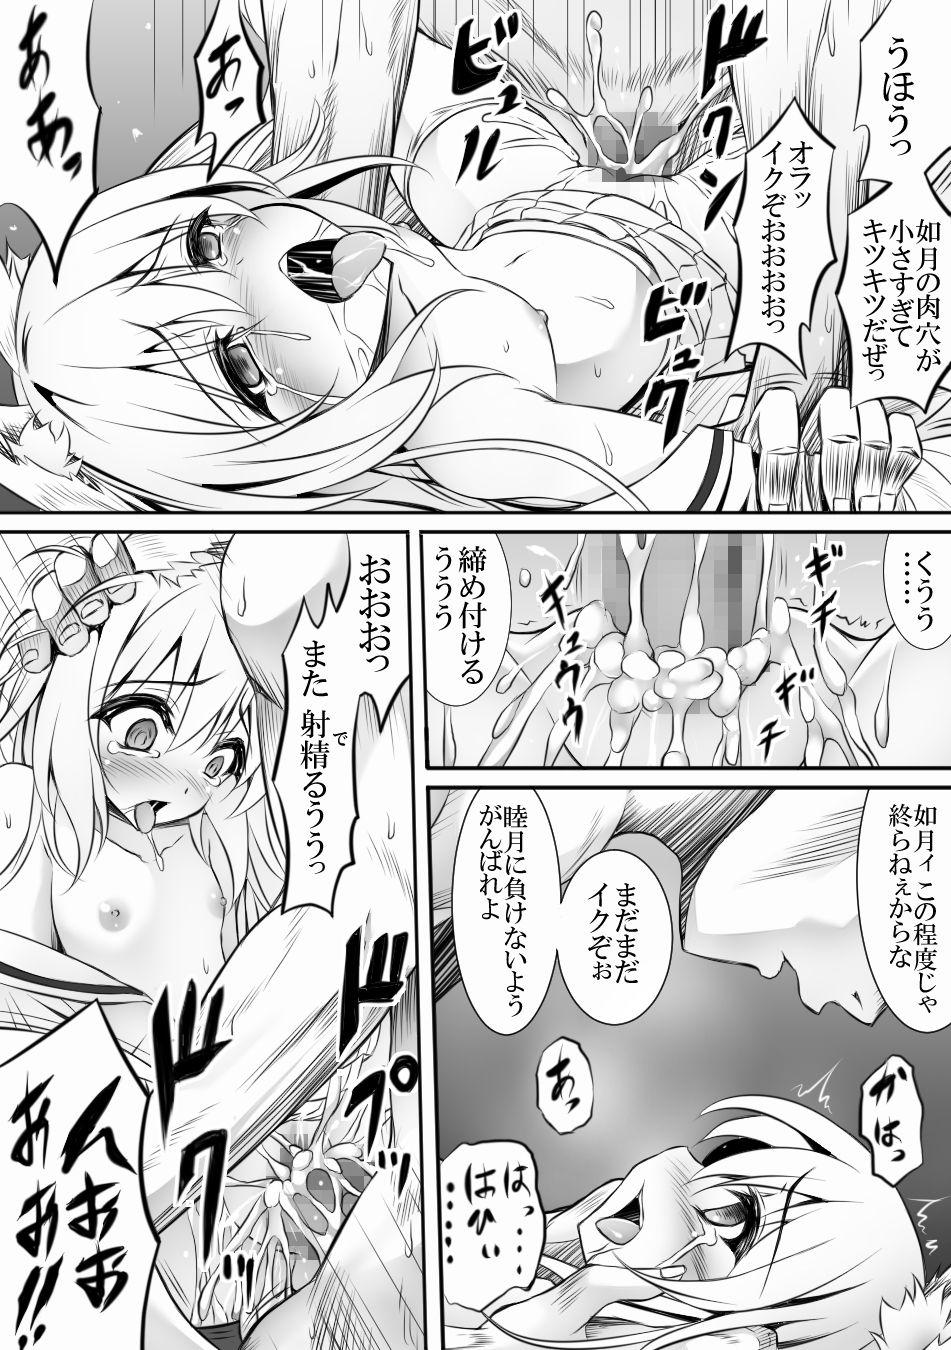 AzuLan 1 Page Manga 1